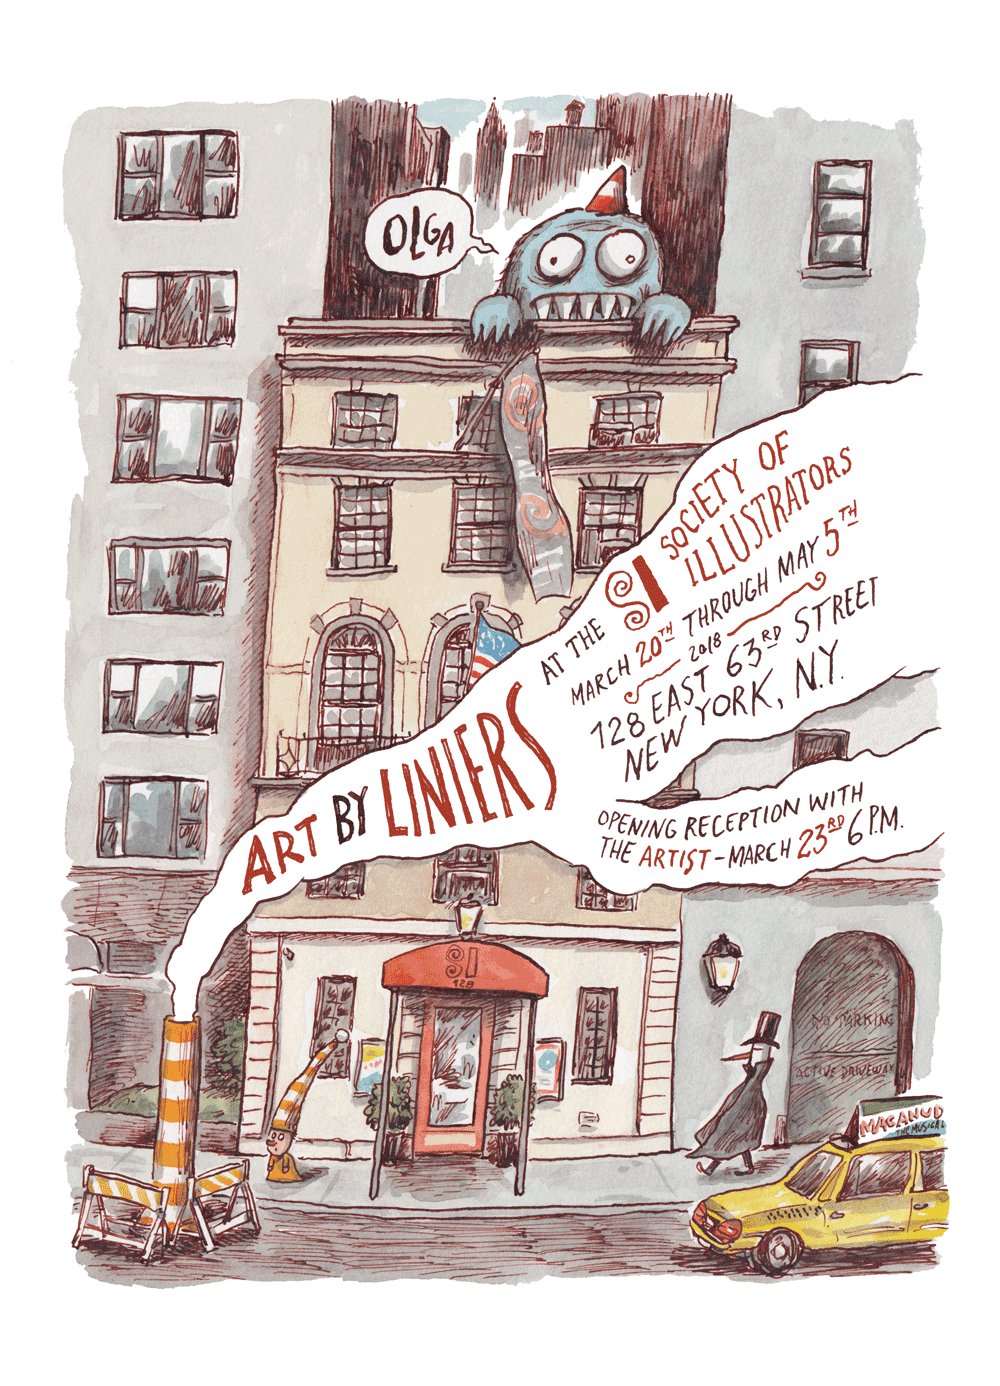 Art by Liniers, a primeira grande exposição de Liniers nos EUA